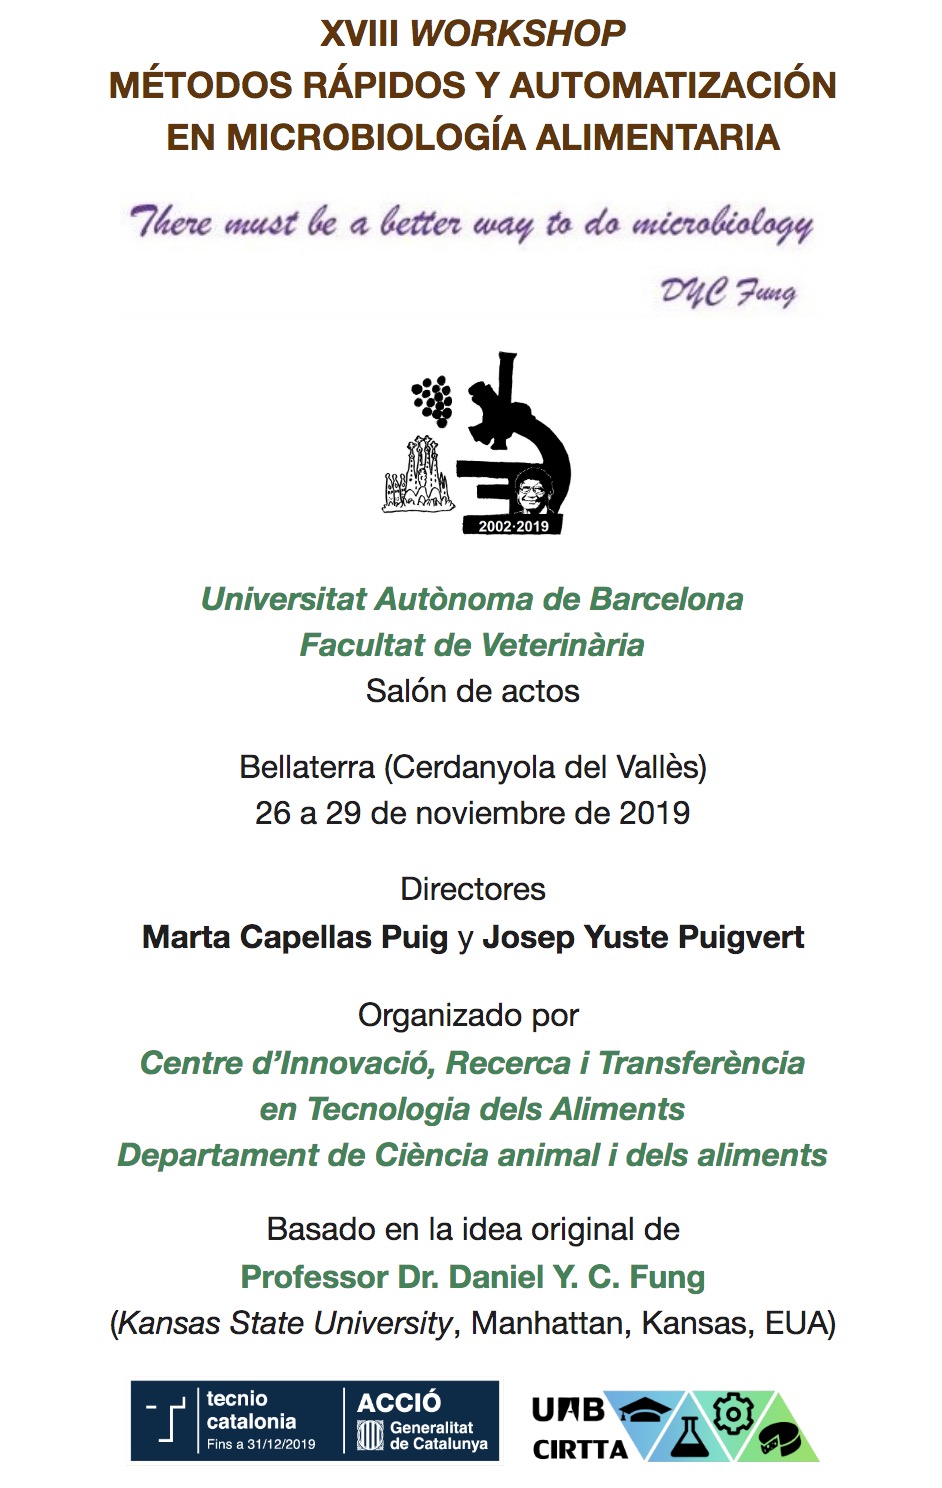 XVIII Workshop sobre métodos rápidos y automatización en microbiología alimentaria  (MRAMA) , 26-29 novembre (Barcelona, UAB)